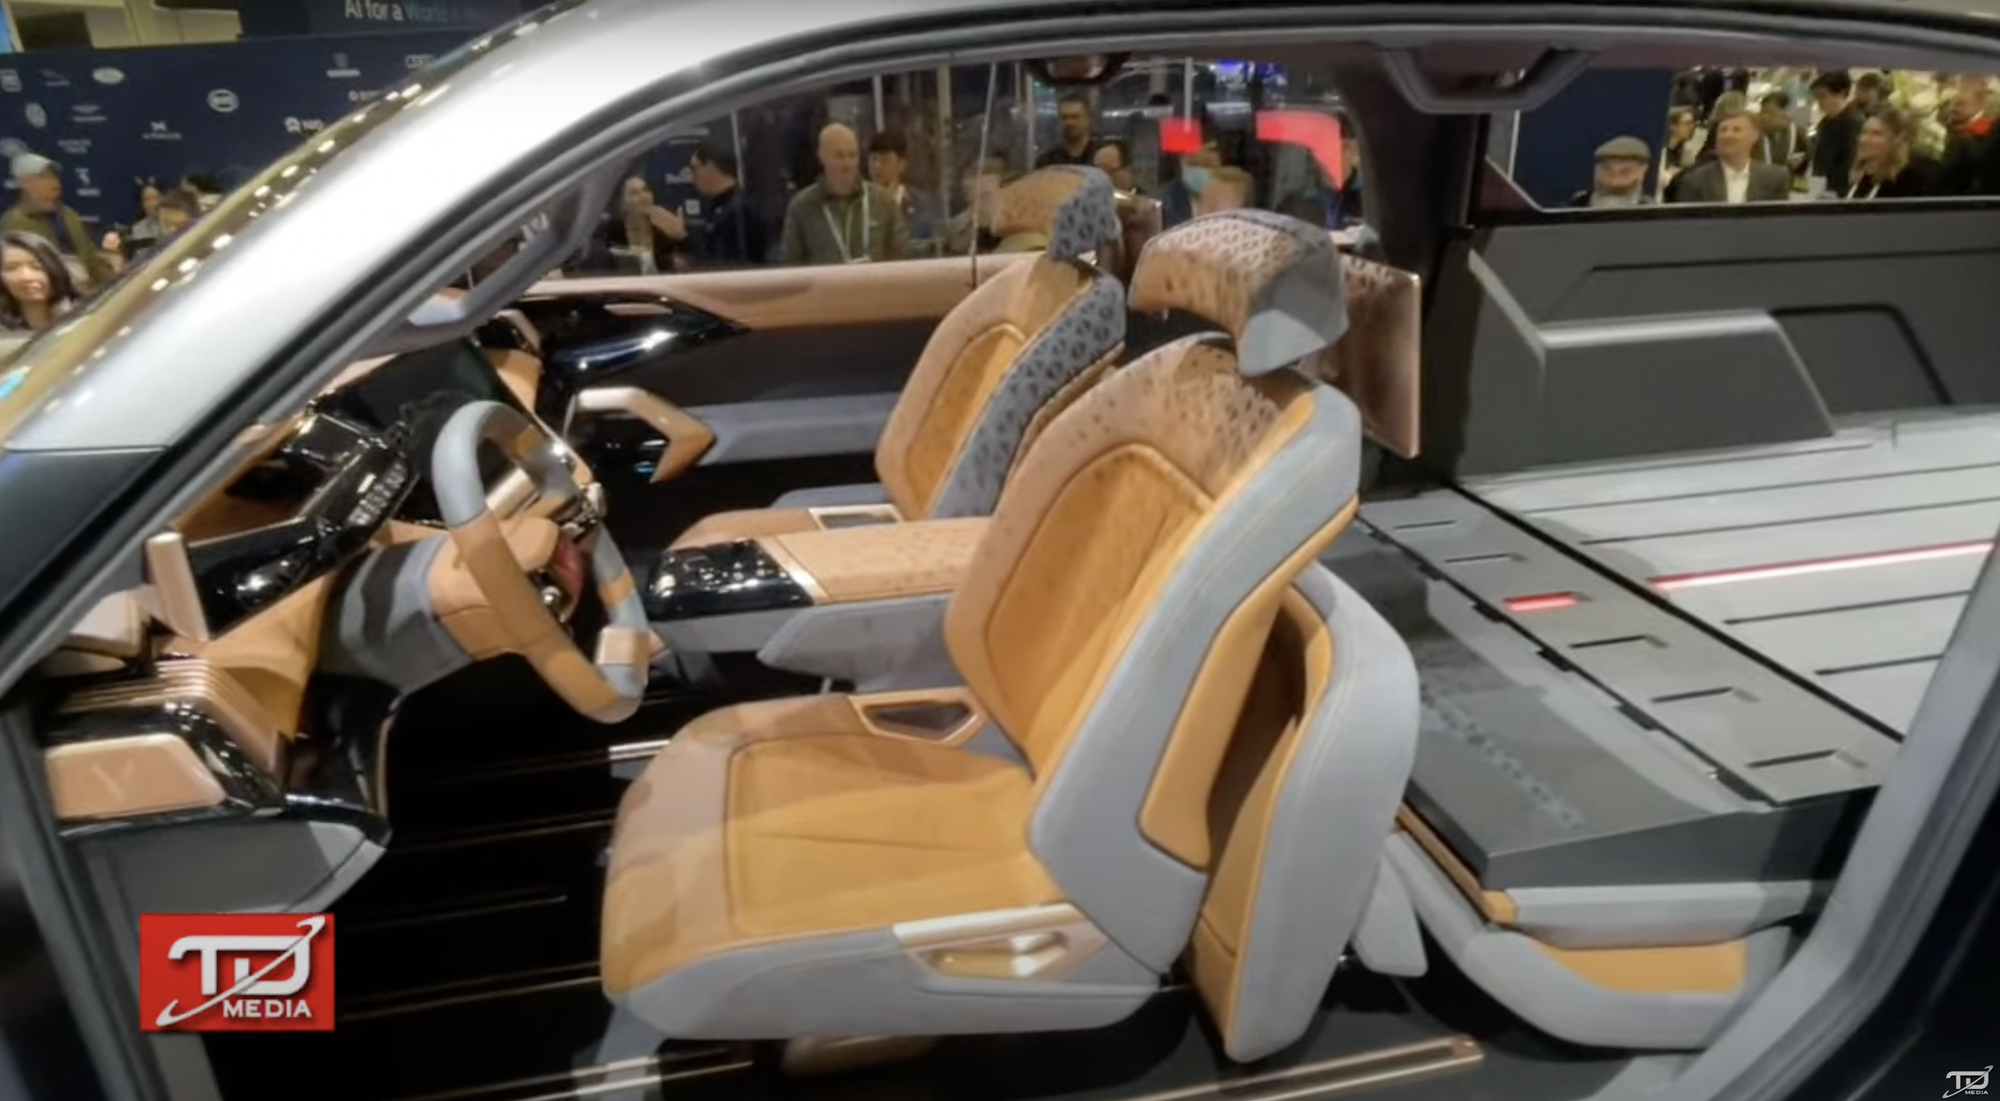 Bán tải VinFast ra mắt với thiết kế như xe viễn tưởng: Cửa mở ngược như Rolls-Royce, trần kính cực lớn- Ảnh 4.